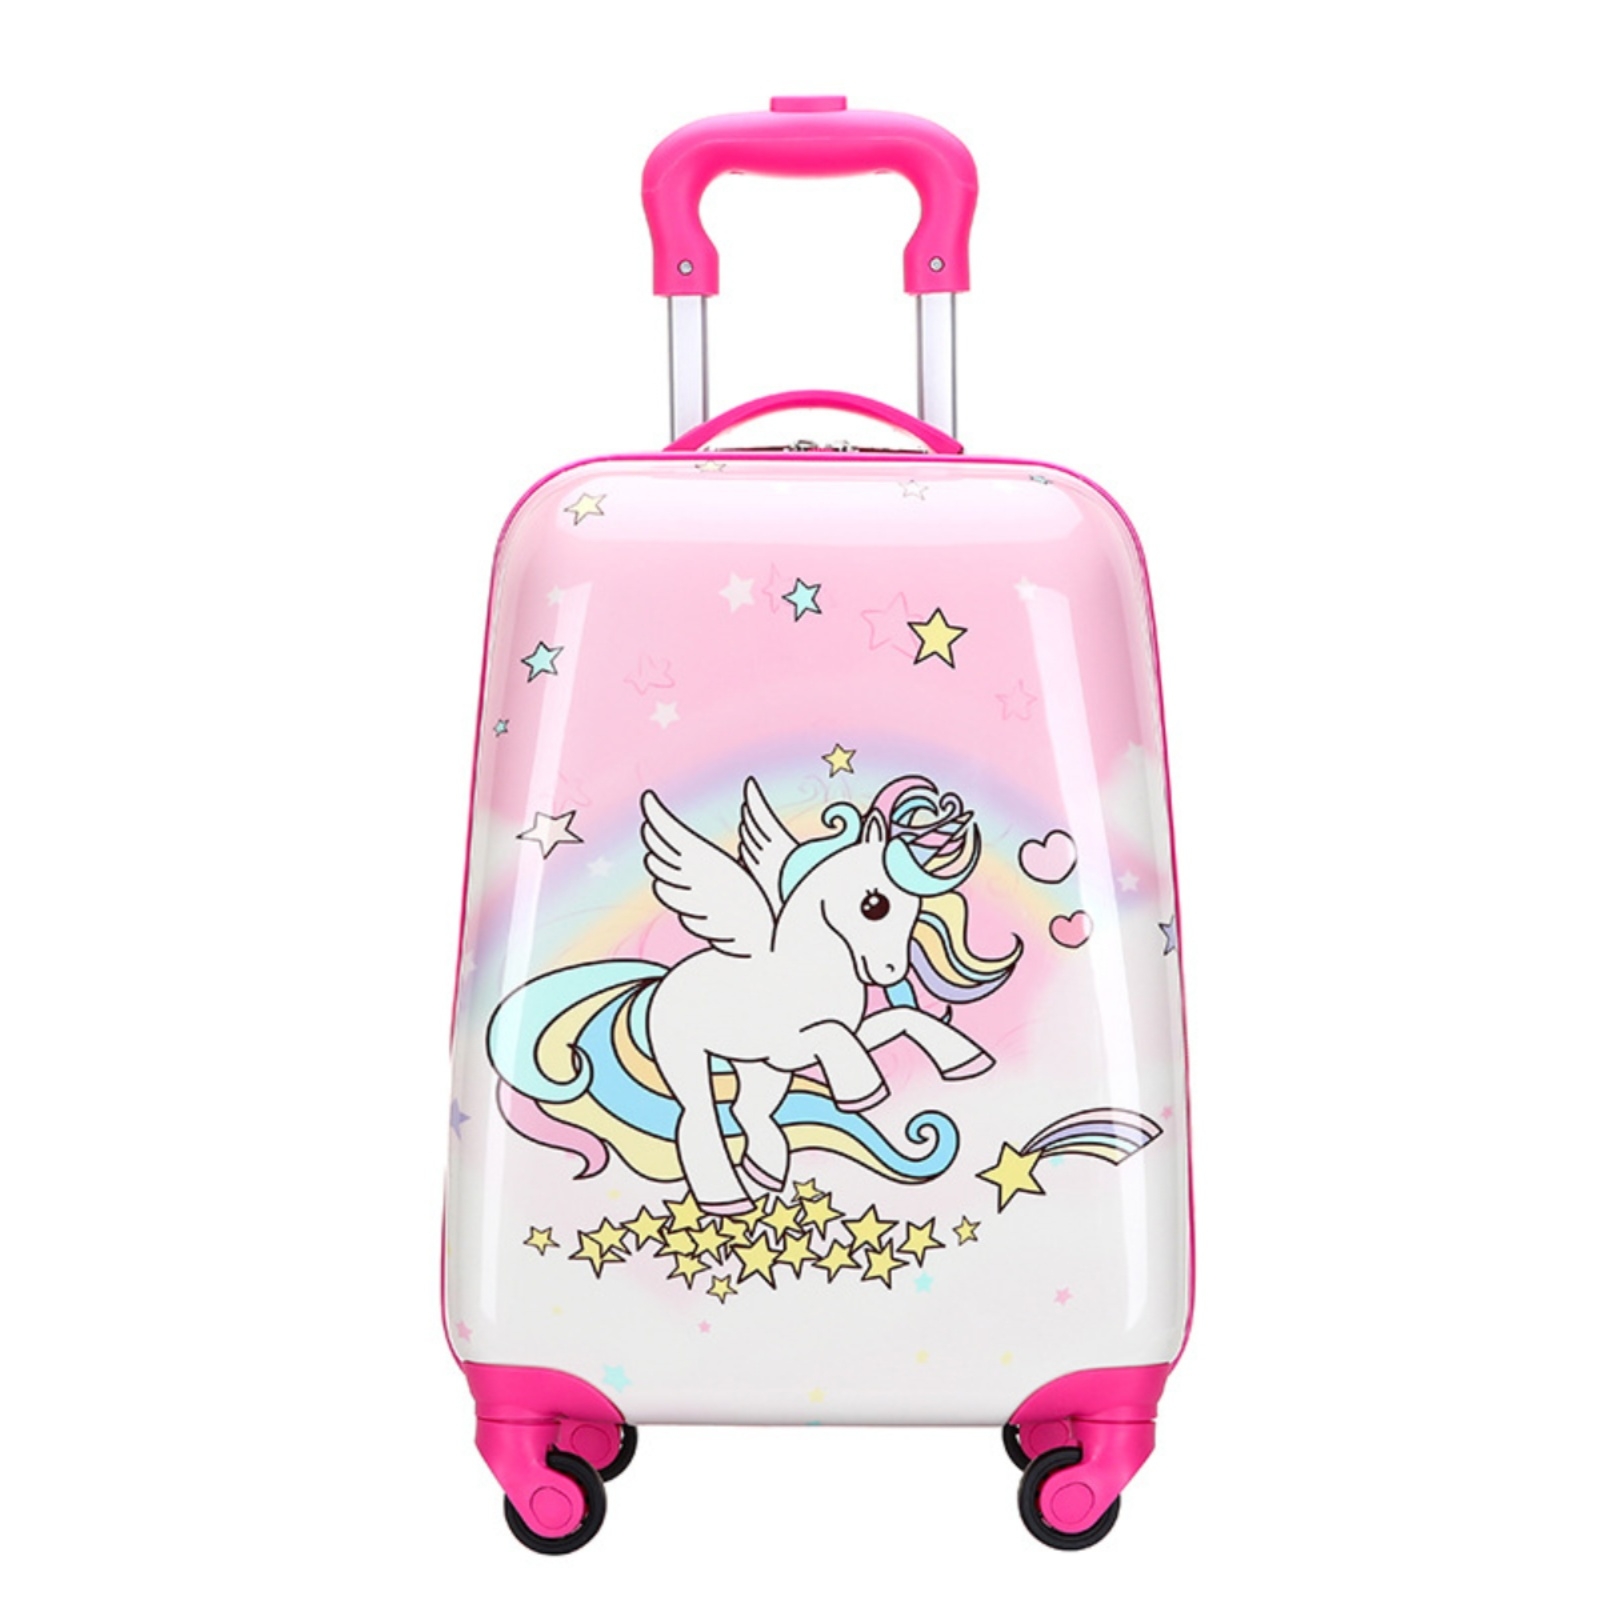 新款时尚儿童拉杆箱18寸卡通可爱万向轮小学生书包拉行李旅行箱